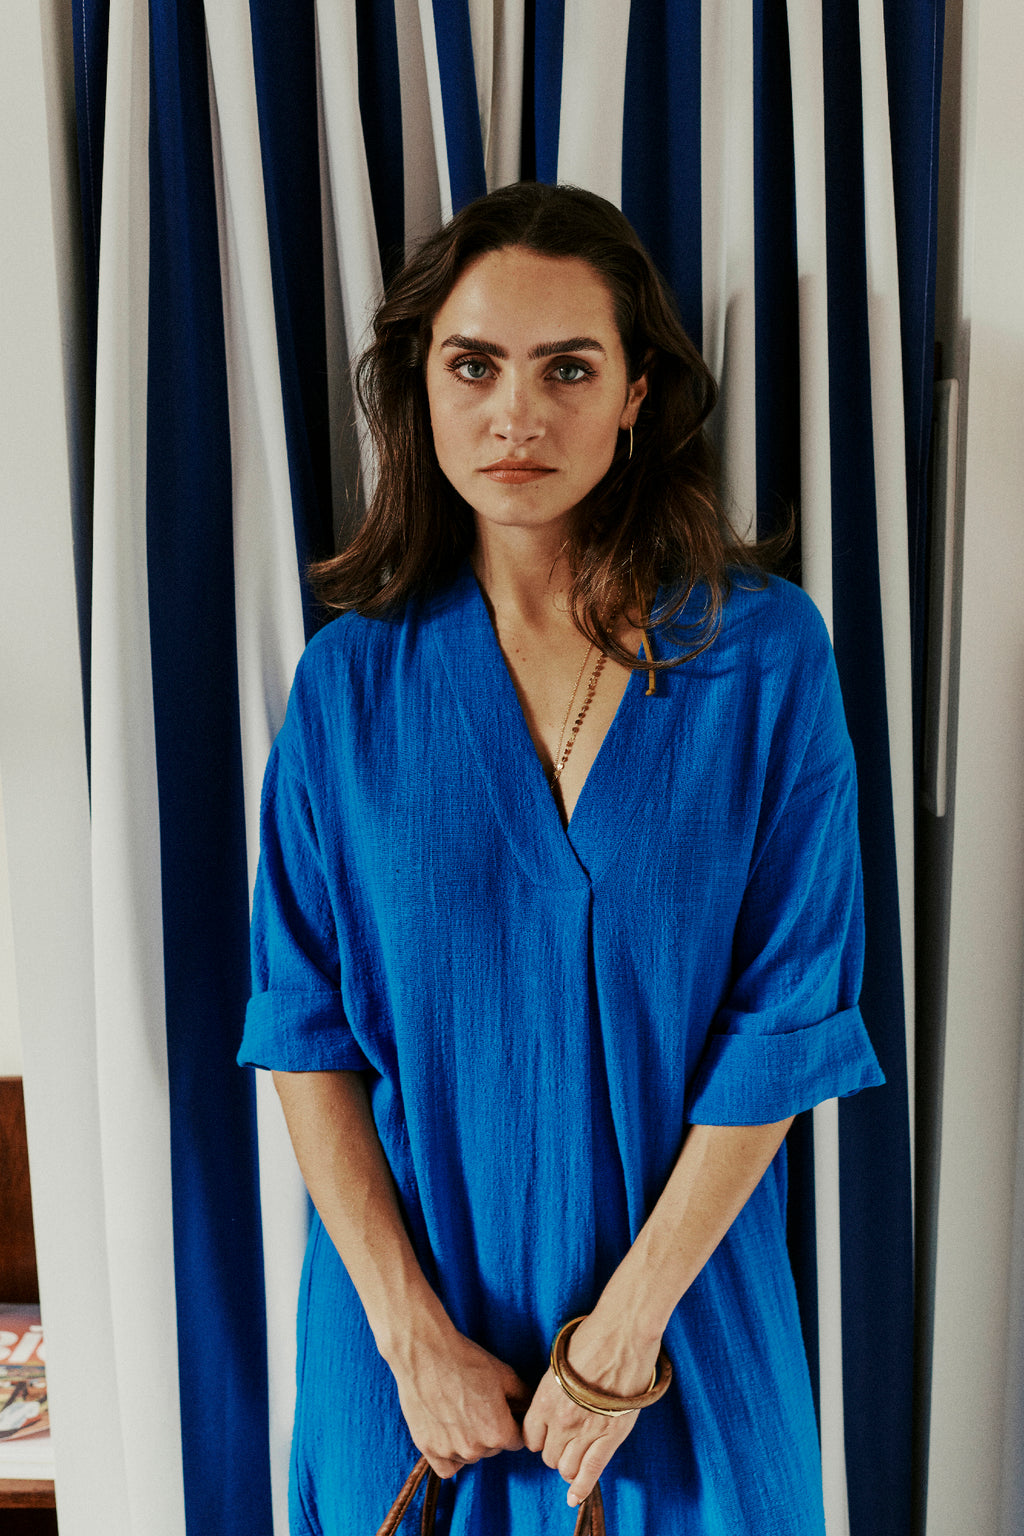 Bisma Santorini blue dress